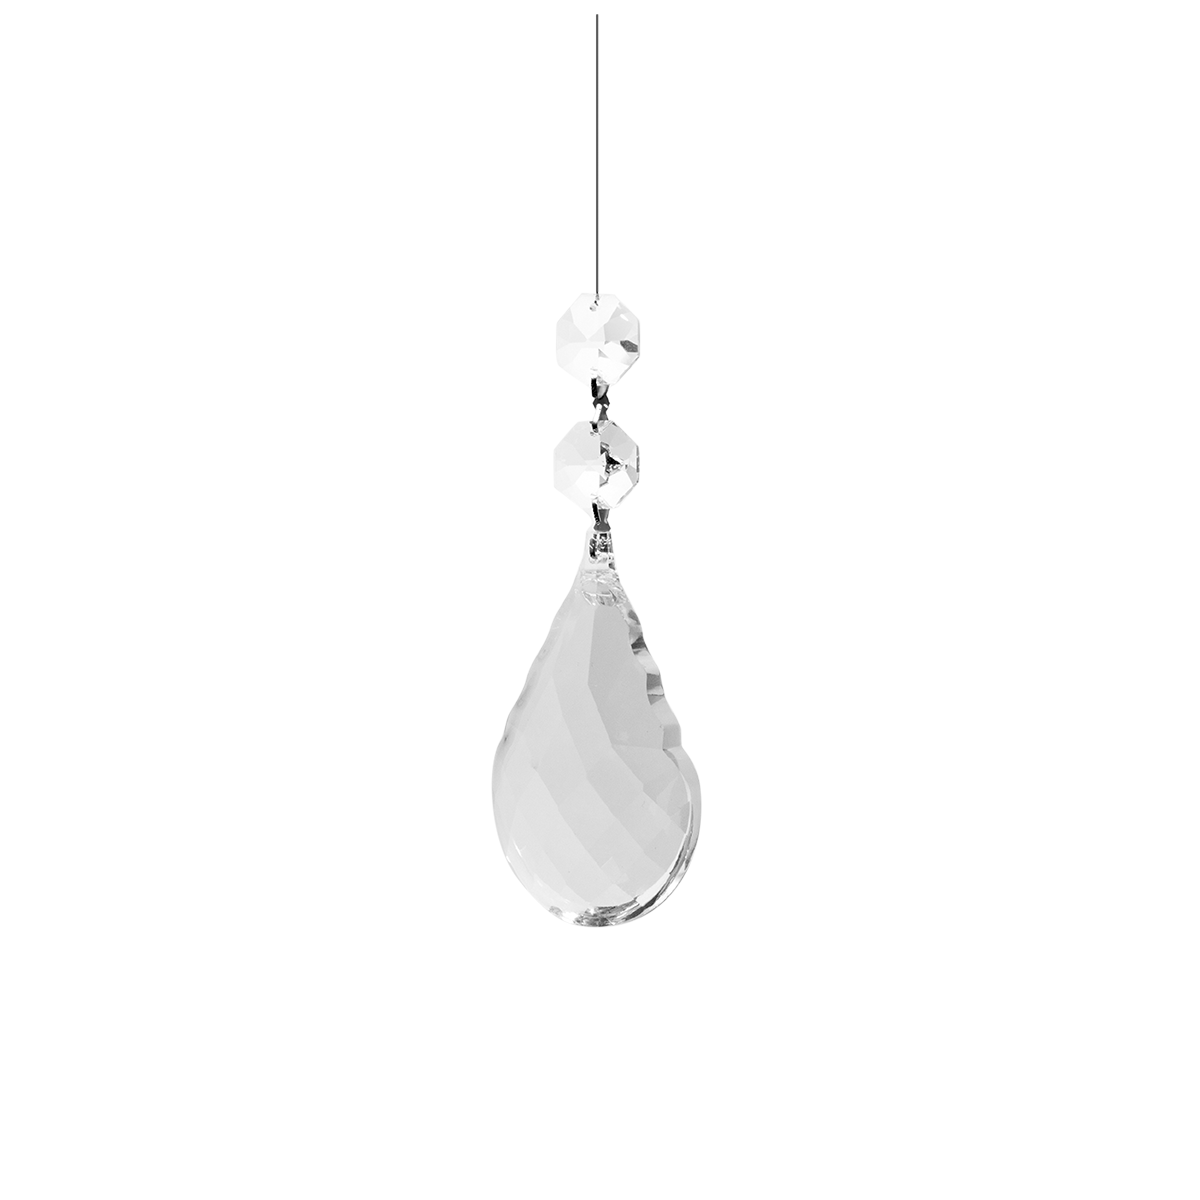 Kristallbehang Wachtel  2 Stück als Paar verbunden mit Edelstahl Faden zum dekorieren  für Kronleuchter oder Balkenleuchten